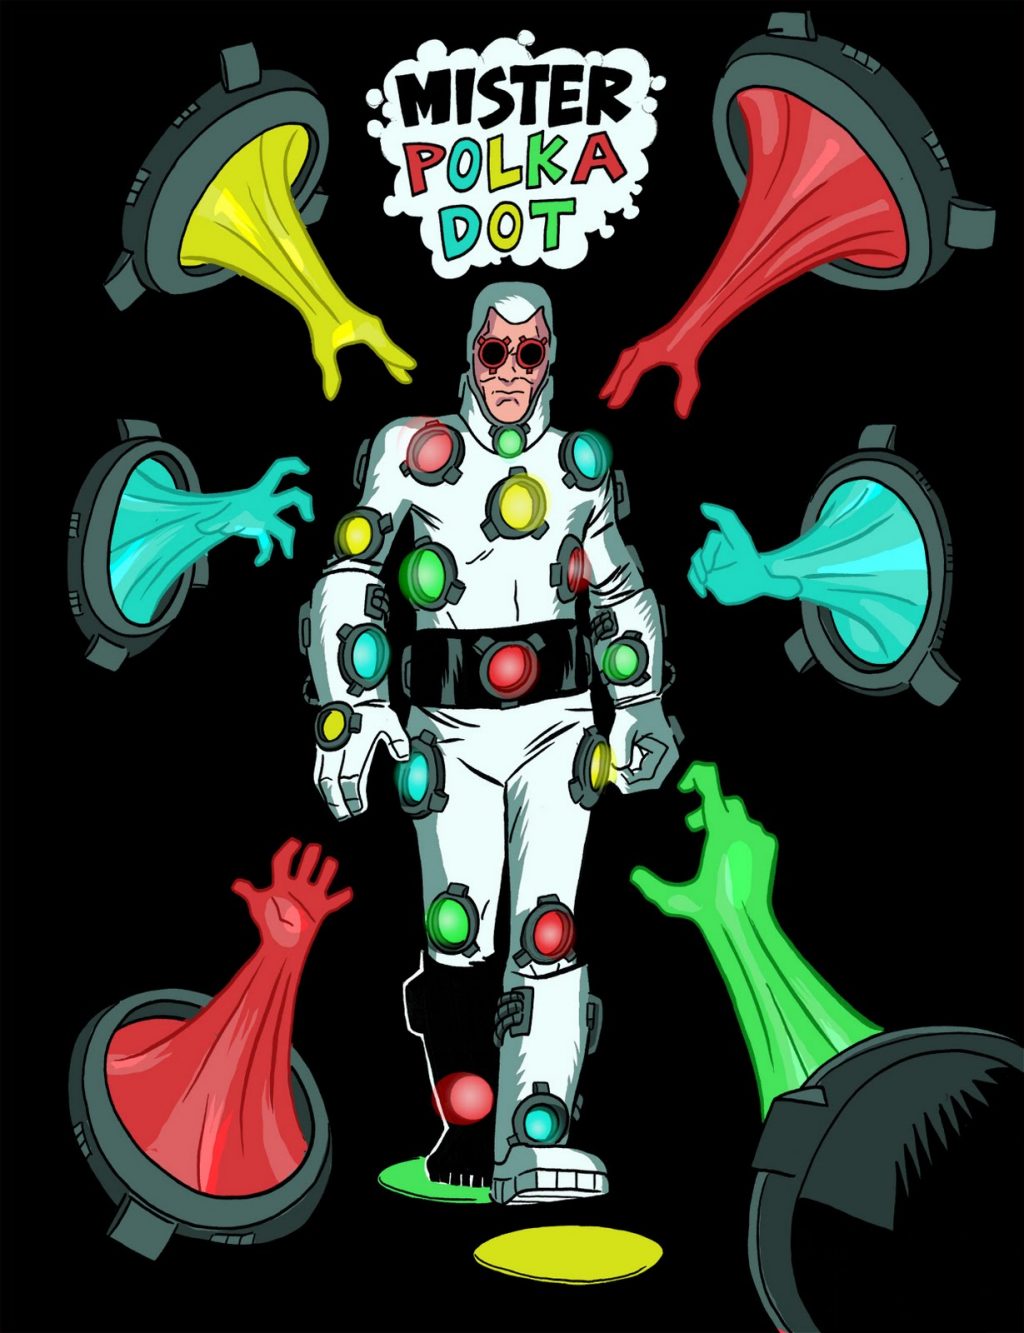 Polka-Dot Man là một nhân vật hoạt hình nam mặc trang phục chấm bi